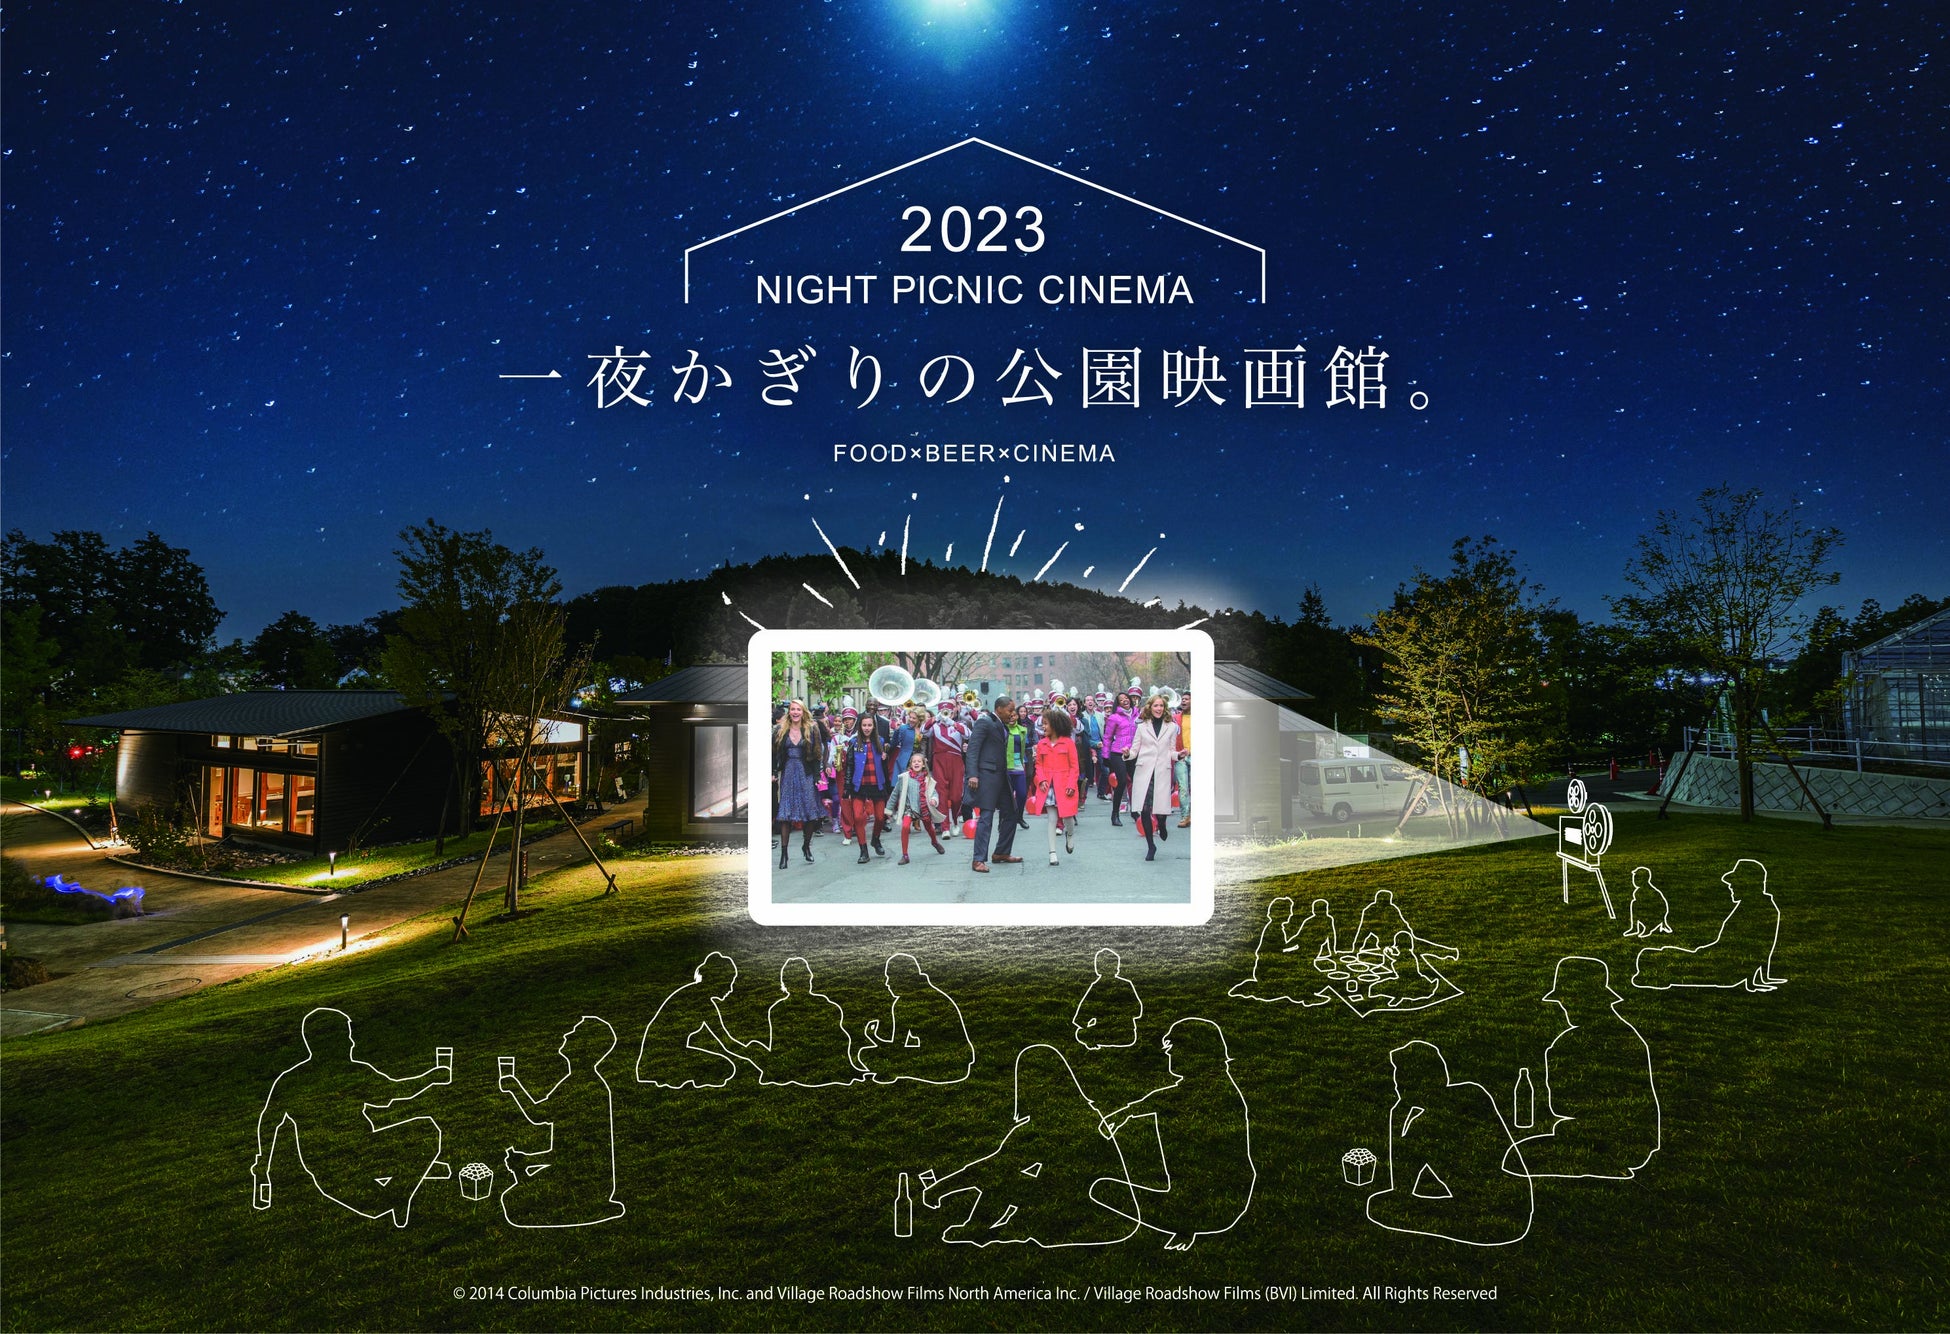 【ナイトピクニックシネマ開催】夜風に吹かれながら、ゴールデンウィークは公園で映画鑑賞。町田の自然豊かな公園に、一夜かぎりの公園映画館がオープン。